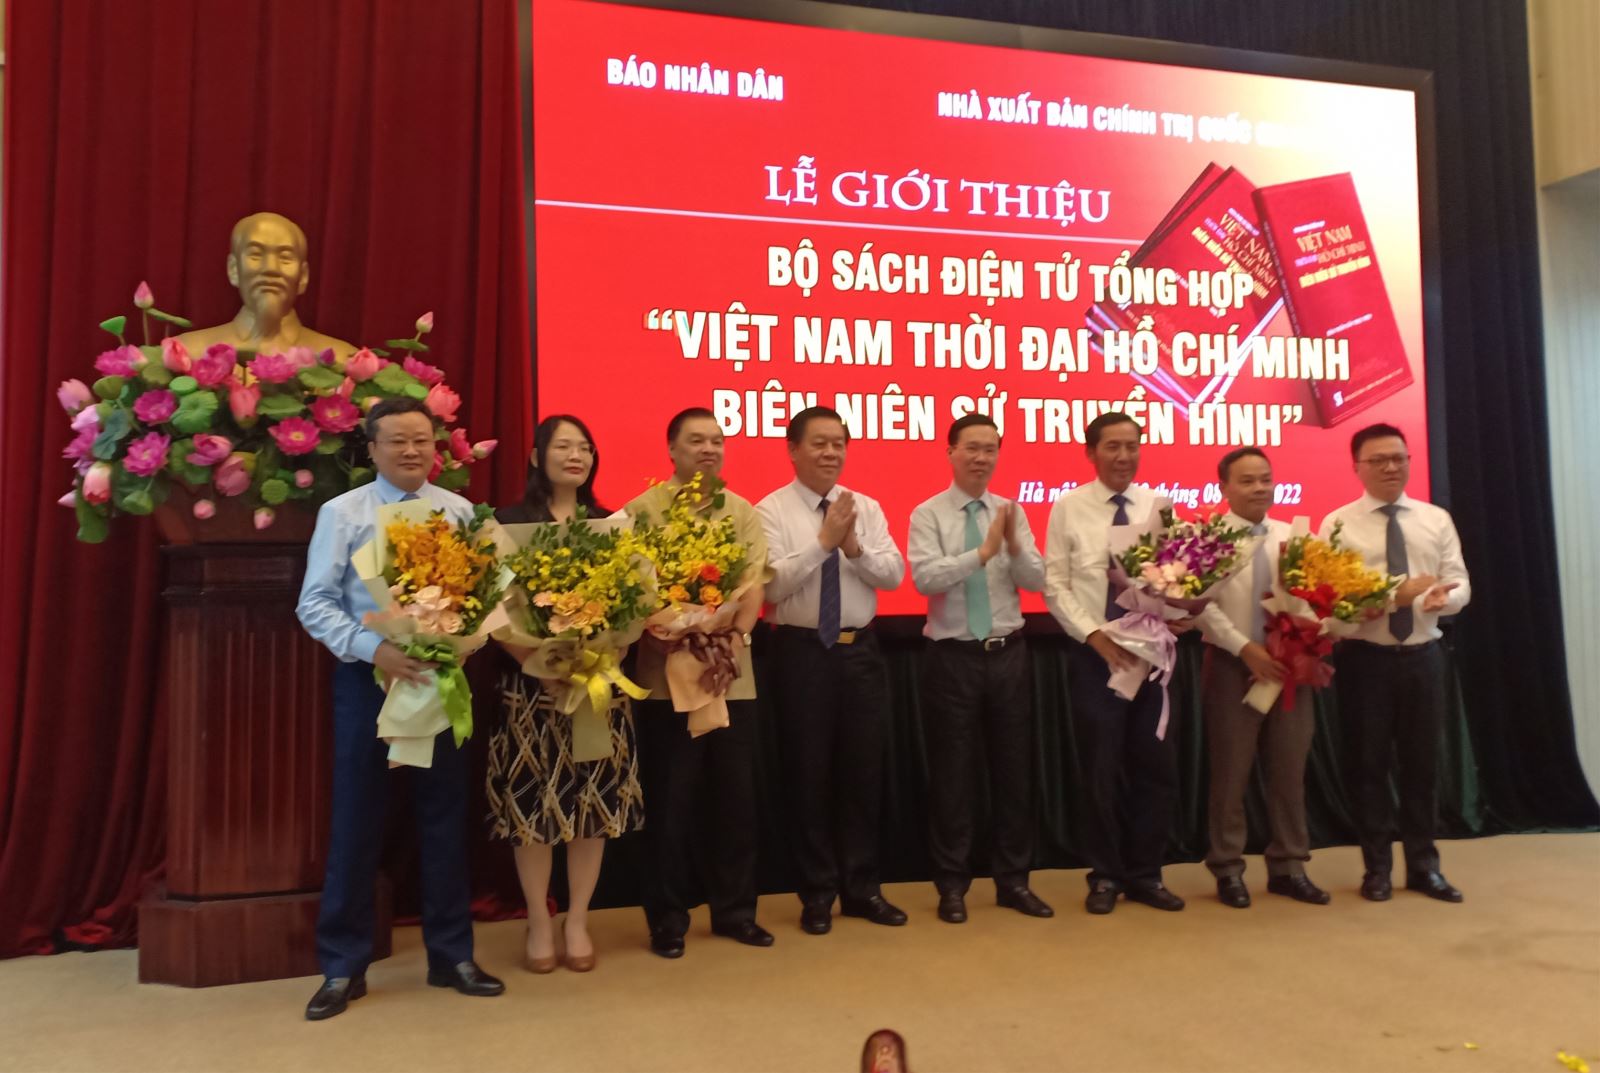 Ra mắt bộ sách điện tử tổng hợp “Việt Nam thời đại Hồ Chí Minh – Biên niên sử truyền hình”